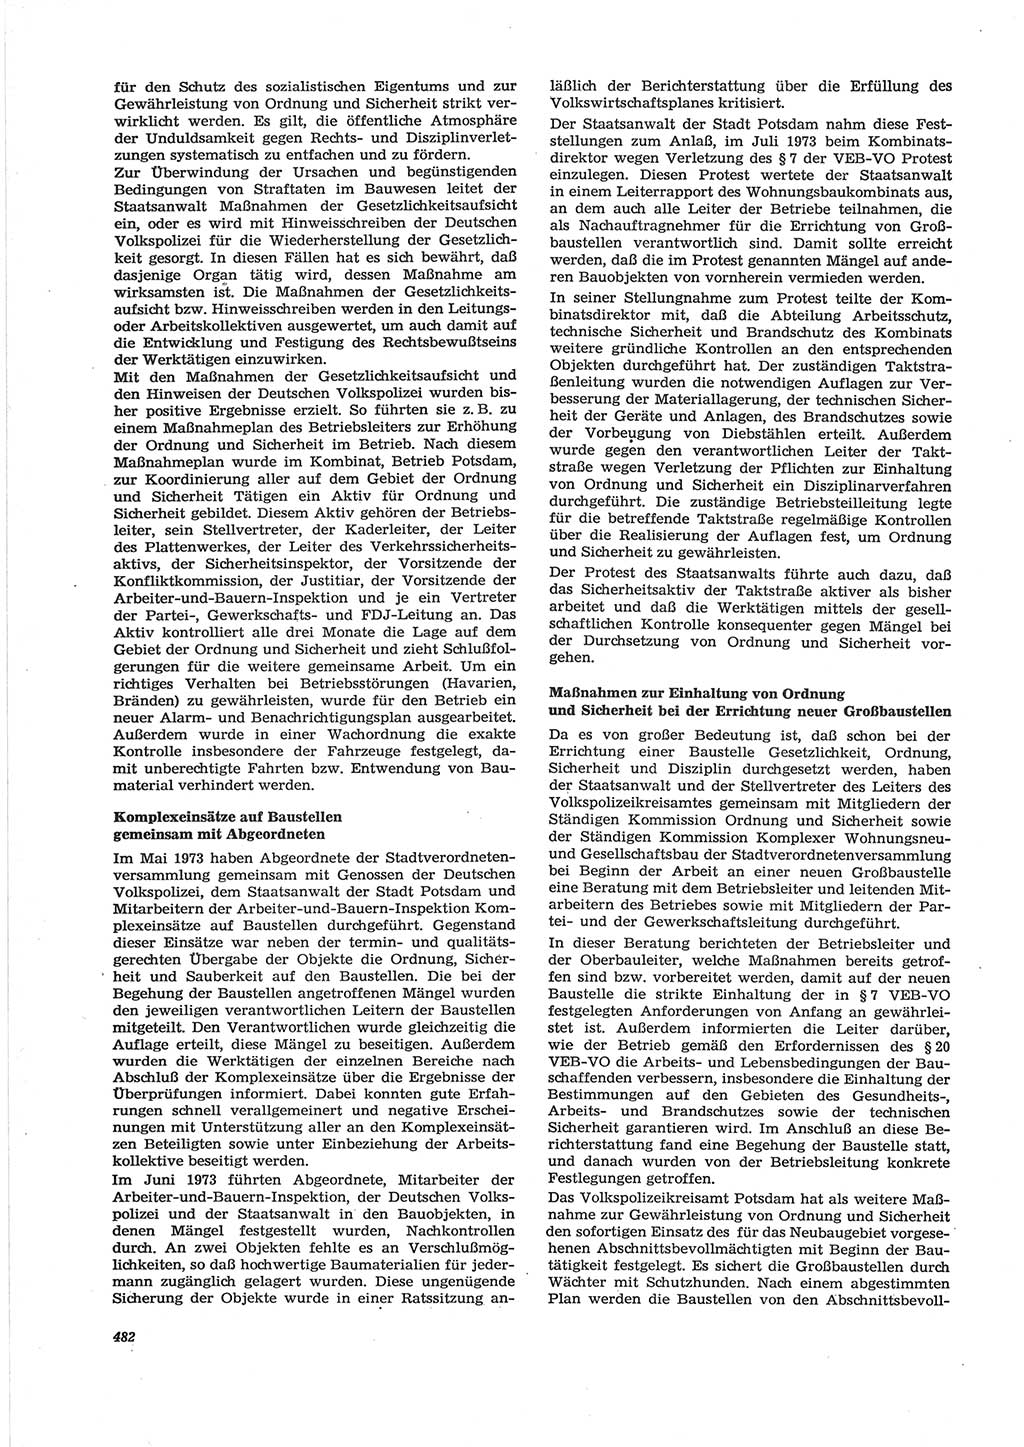 Neue Justiz (NJ), Zeitschrift für Recht und Rechtswissenschaft [Deutsche Demokratische Republik (DDR)], 28. Jahrgang 1974, Seite 482 (NJ DDR 1974, S. 482)